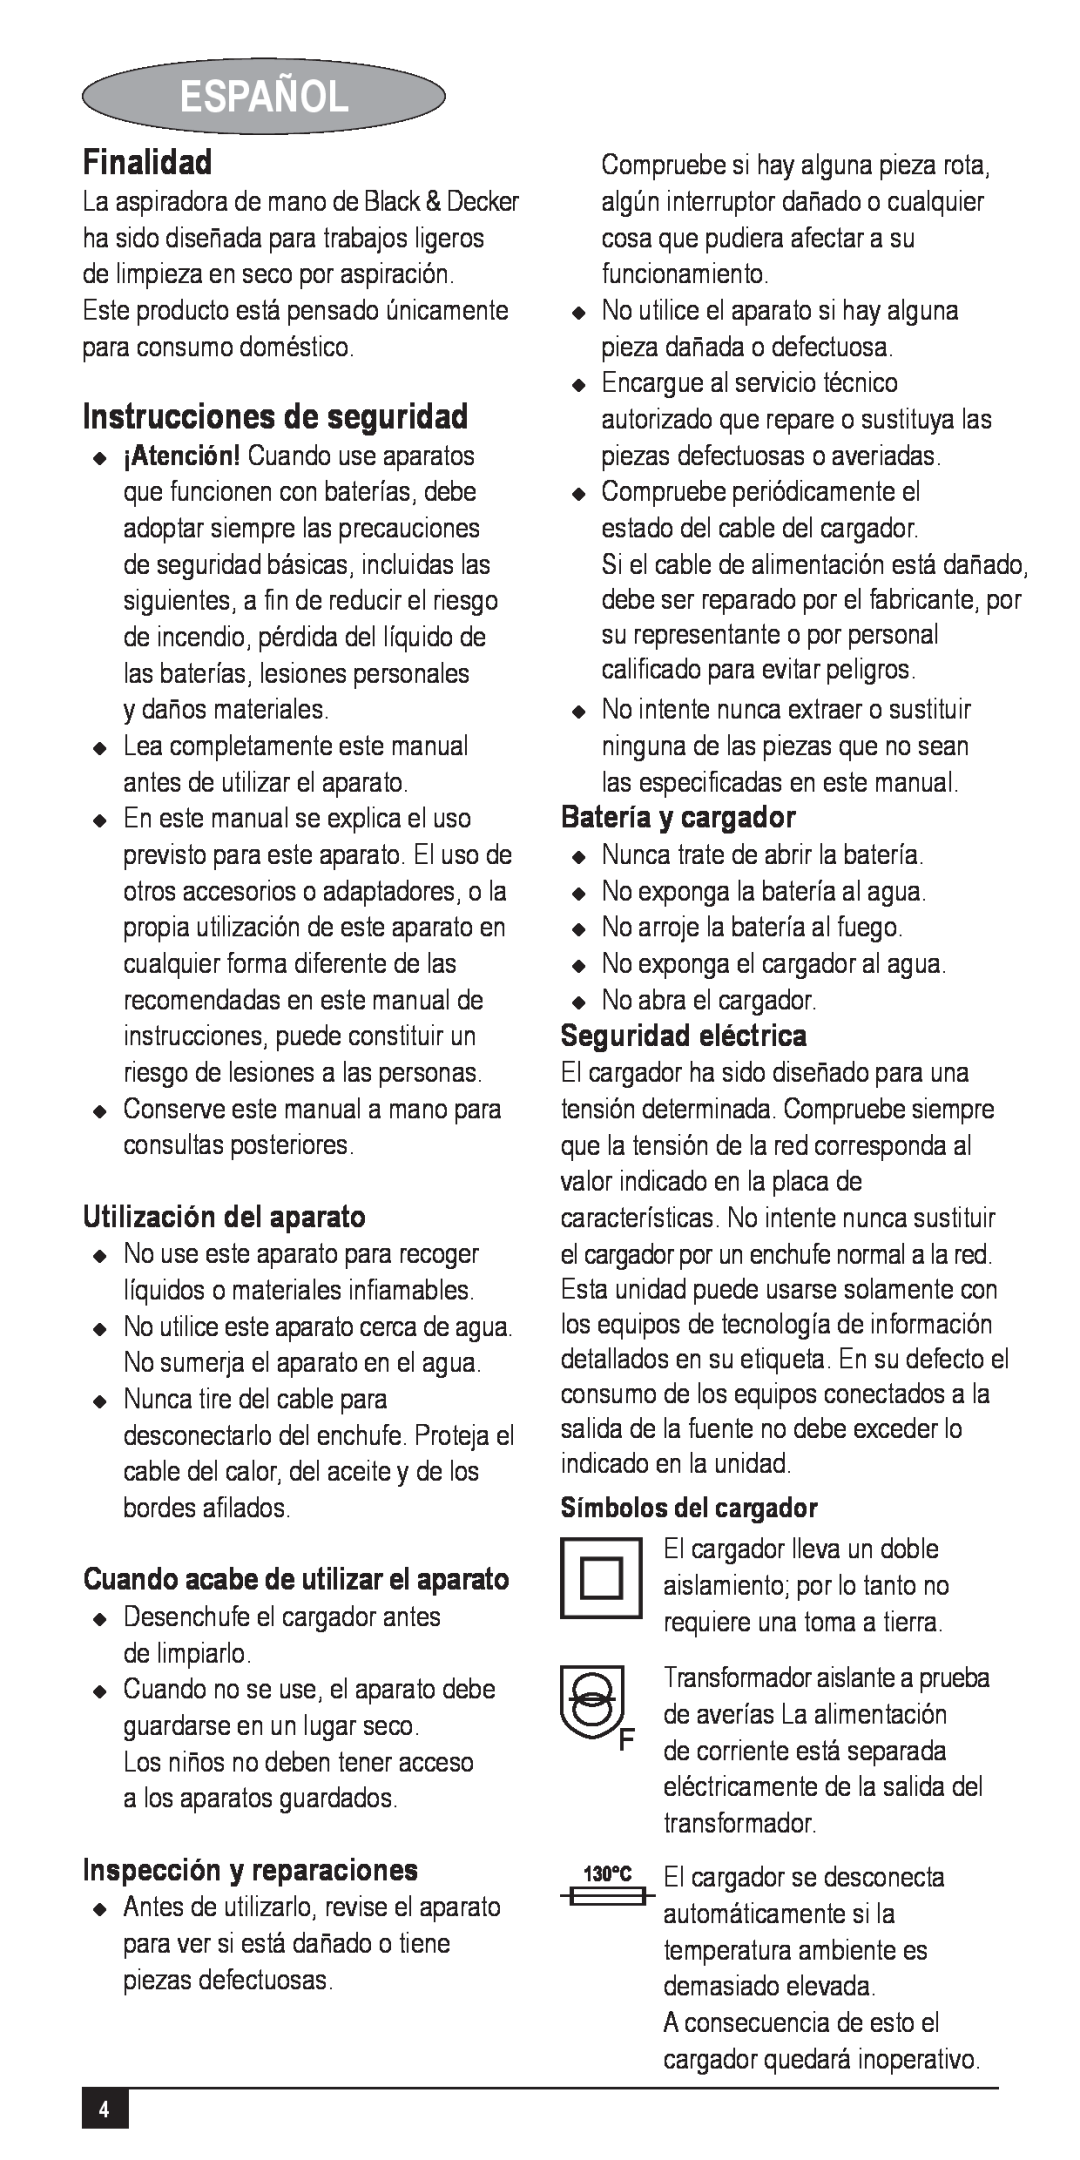 Black & Decker 90501843 Español, Finalidad, Instrucciones de seguridad, Utilización del aparato, Inspección y reparaciones 